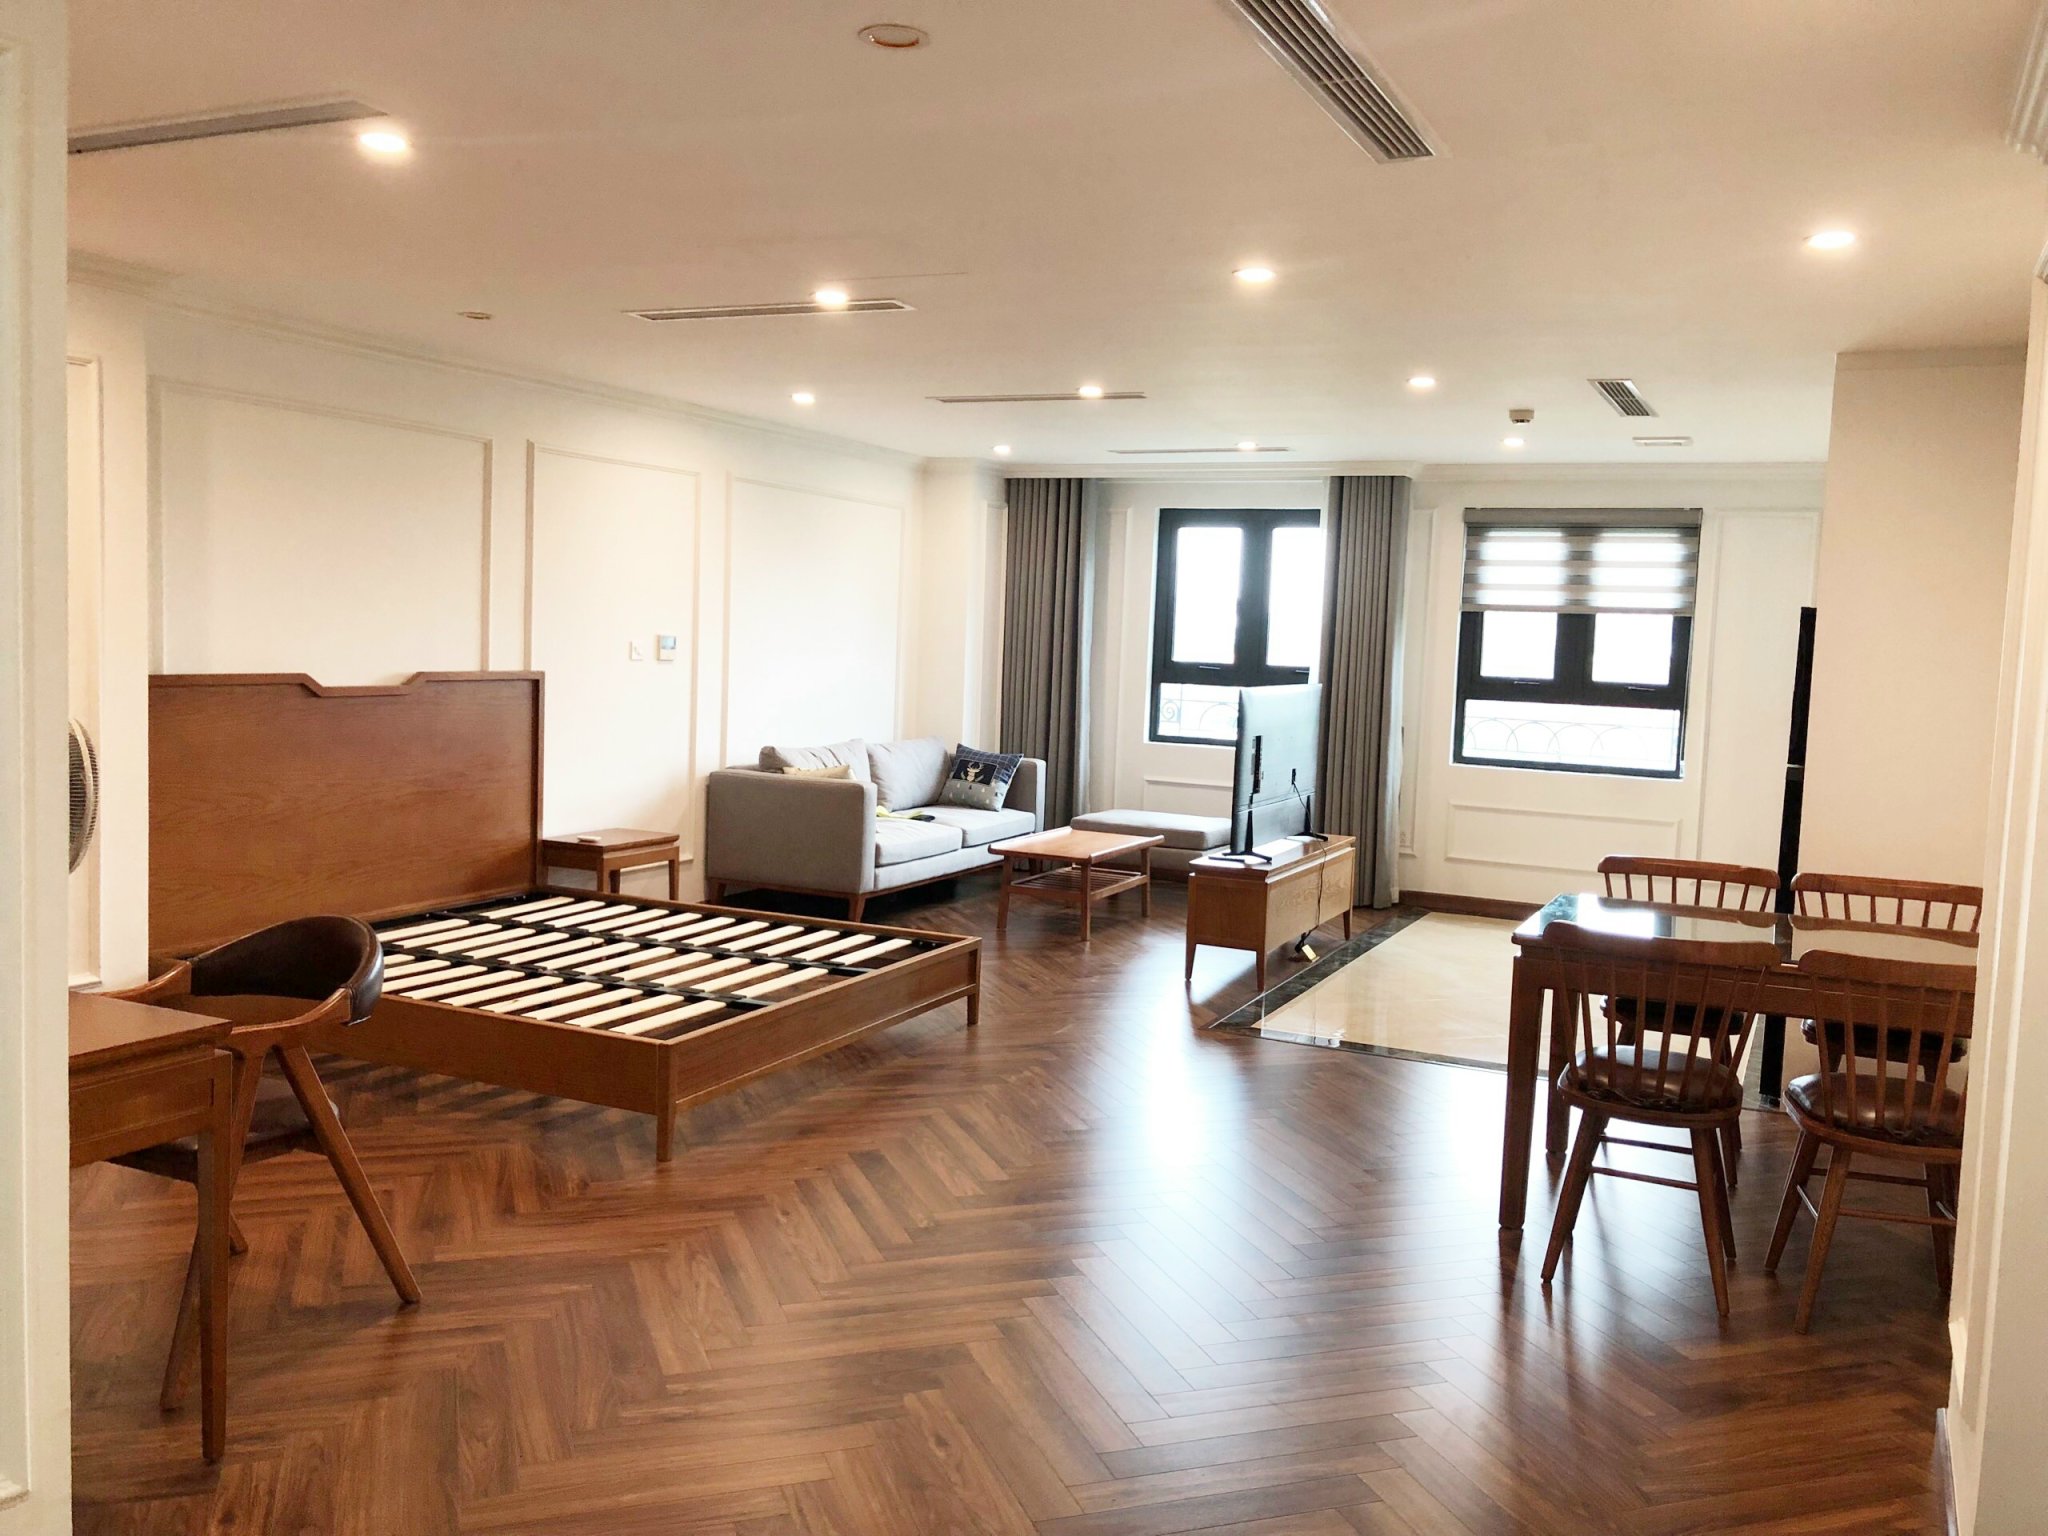 Cho thuê căn hộ dịch vụ  tại tòa nhà cao cấp T - Place 30A Lý Thường Kiệt, diện tích: 55m2, full nội thất.